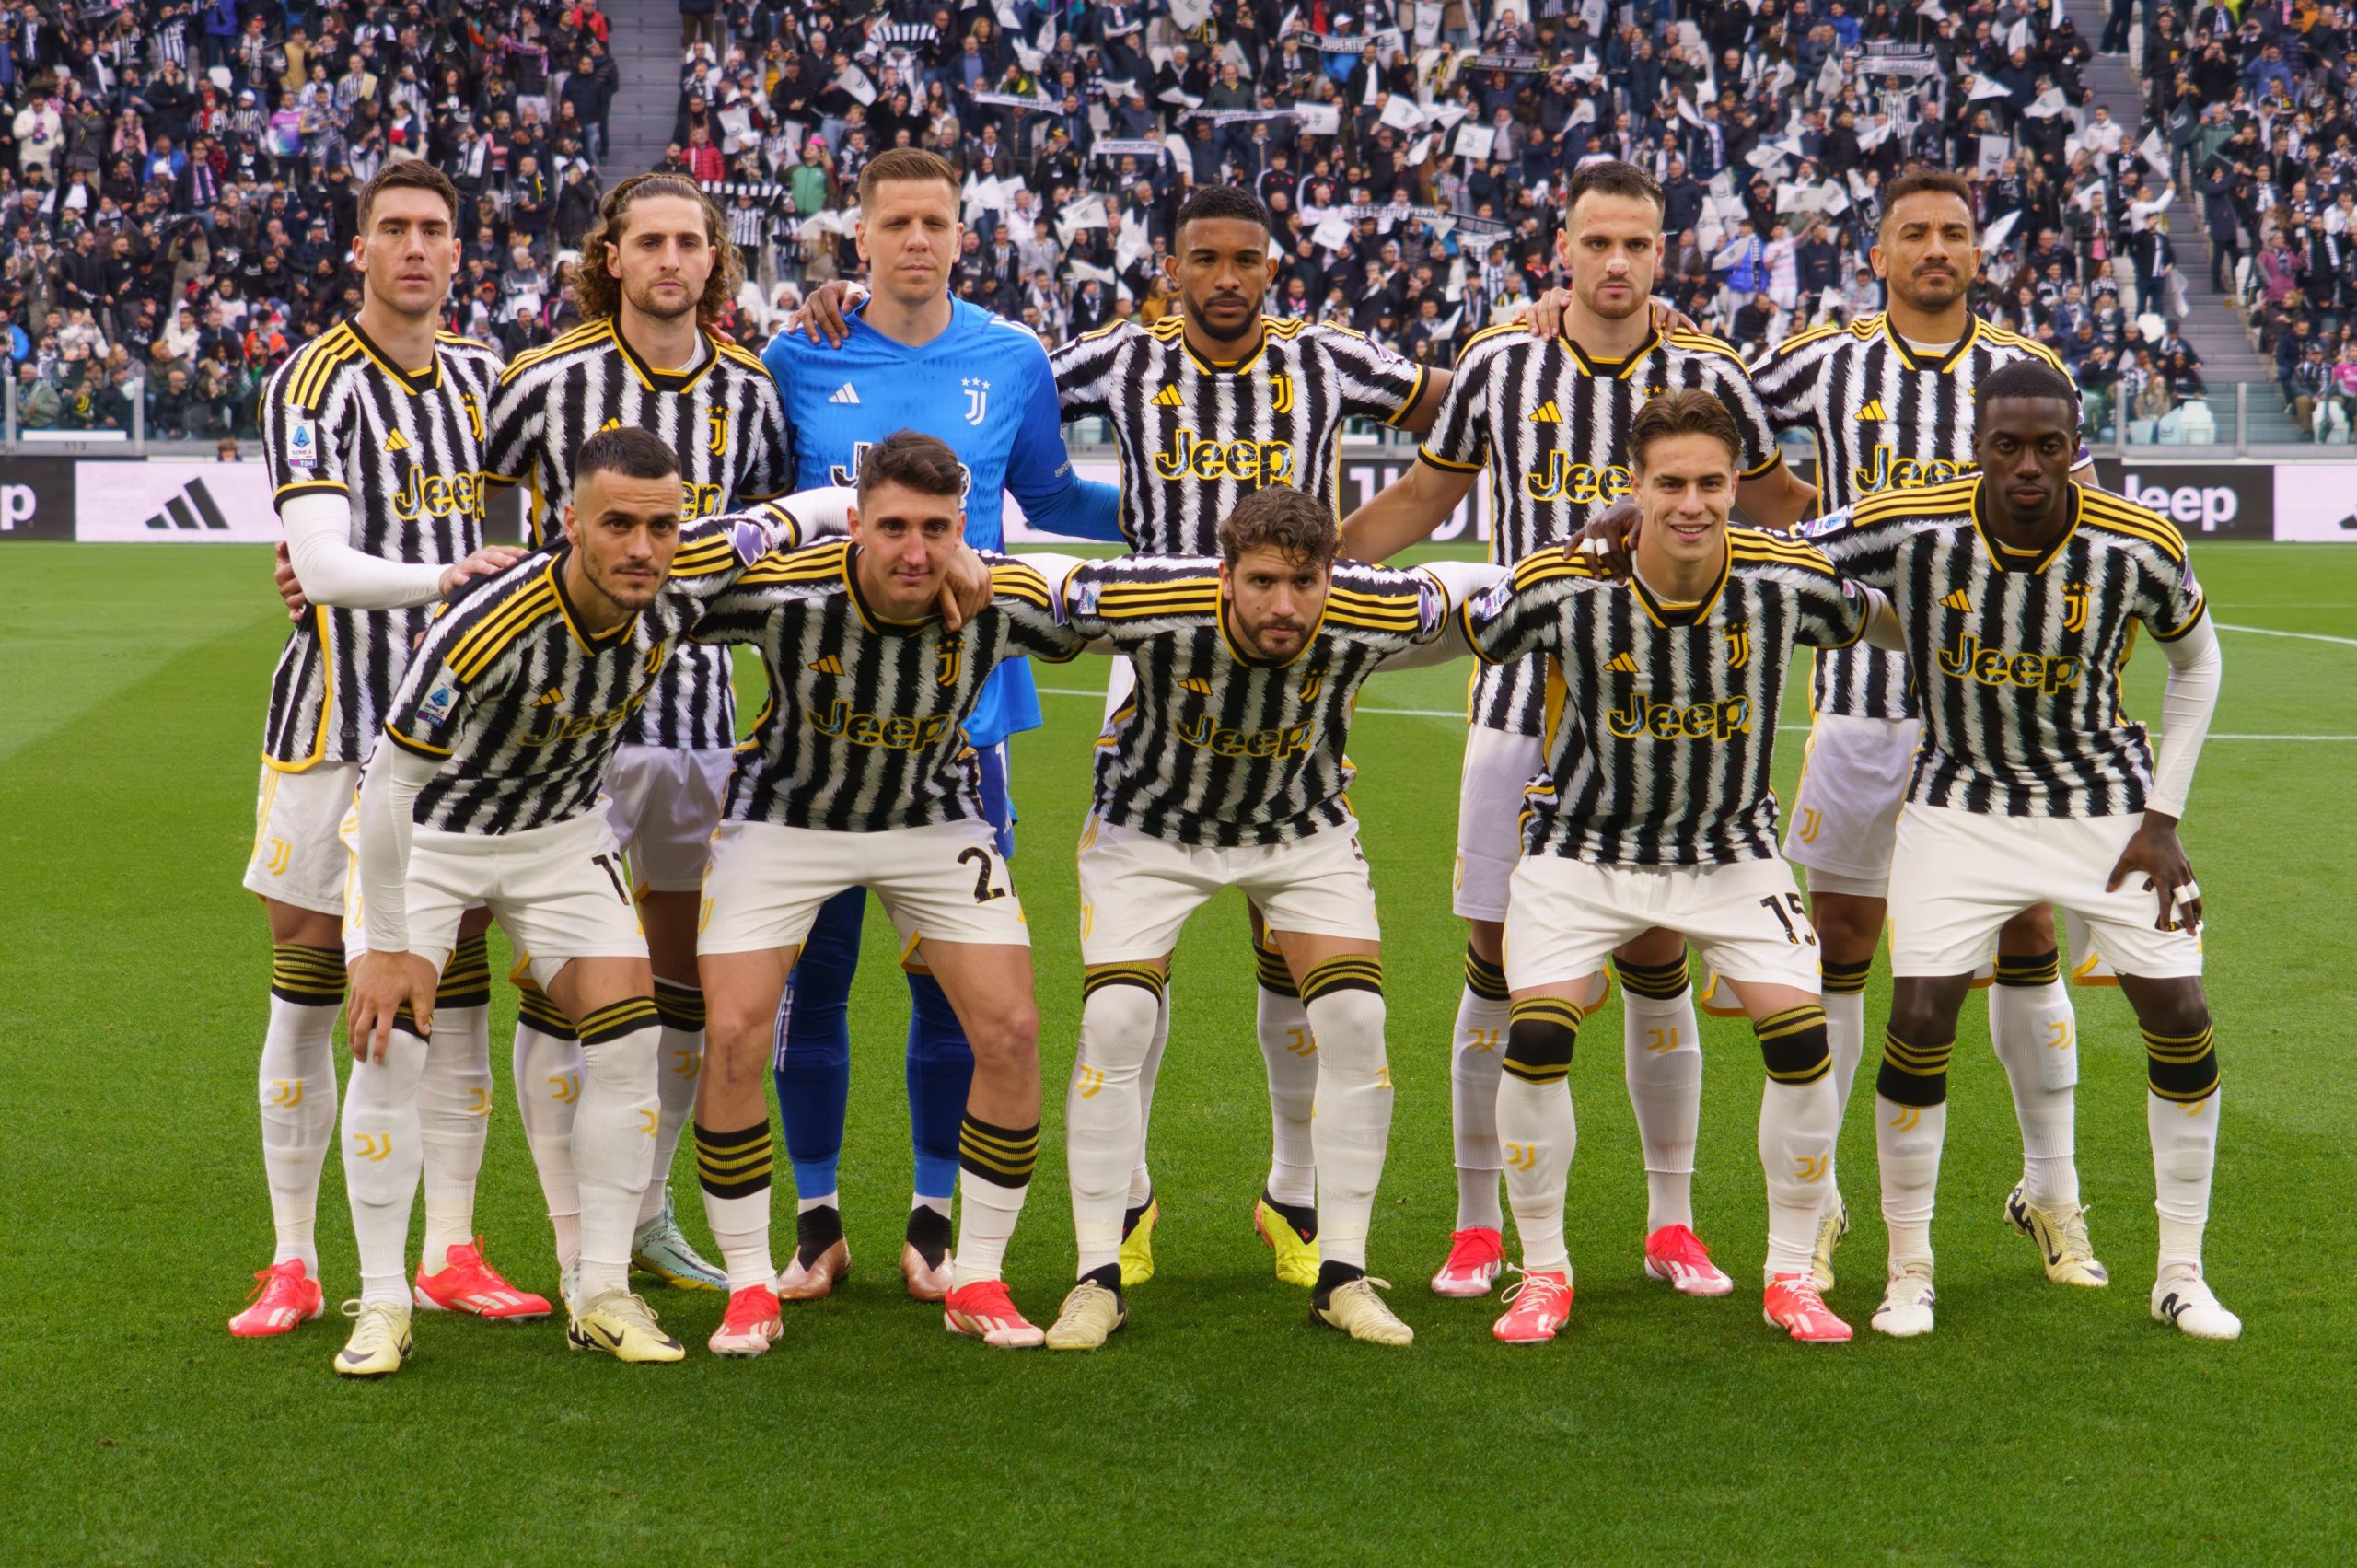 La Juventus, actualmente tercera en la Serie A, busca refuerzos ofensivos para el futuro